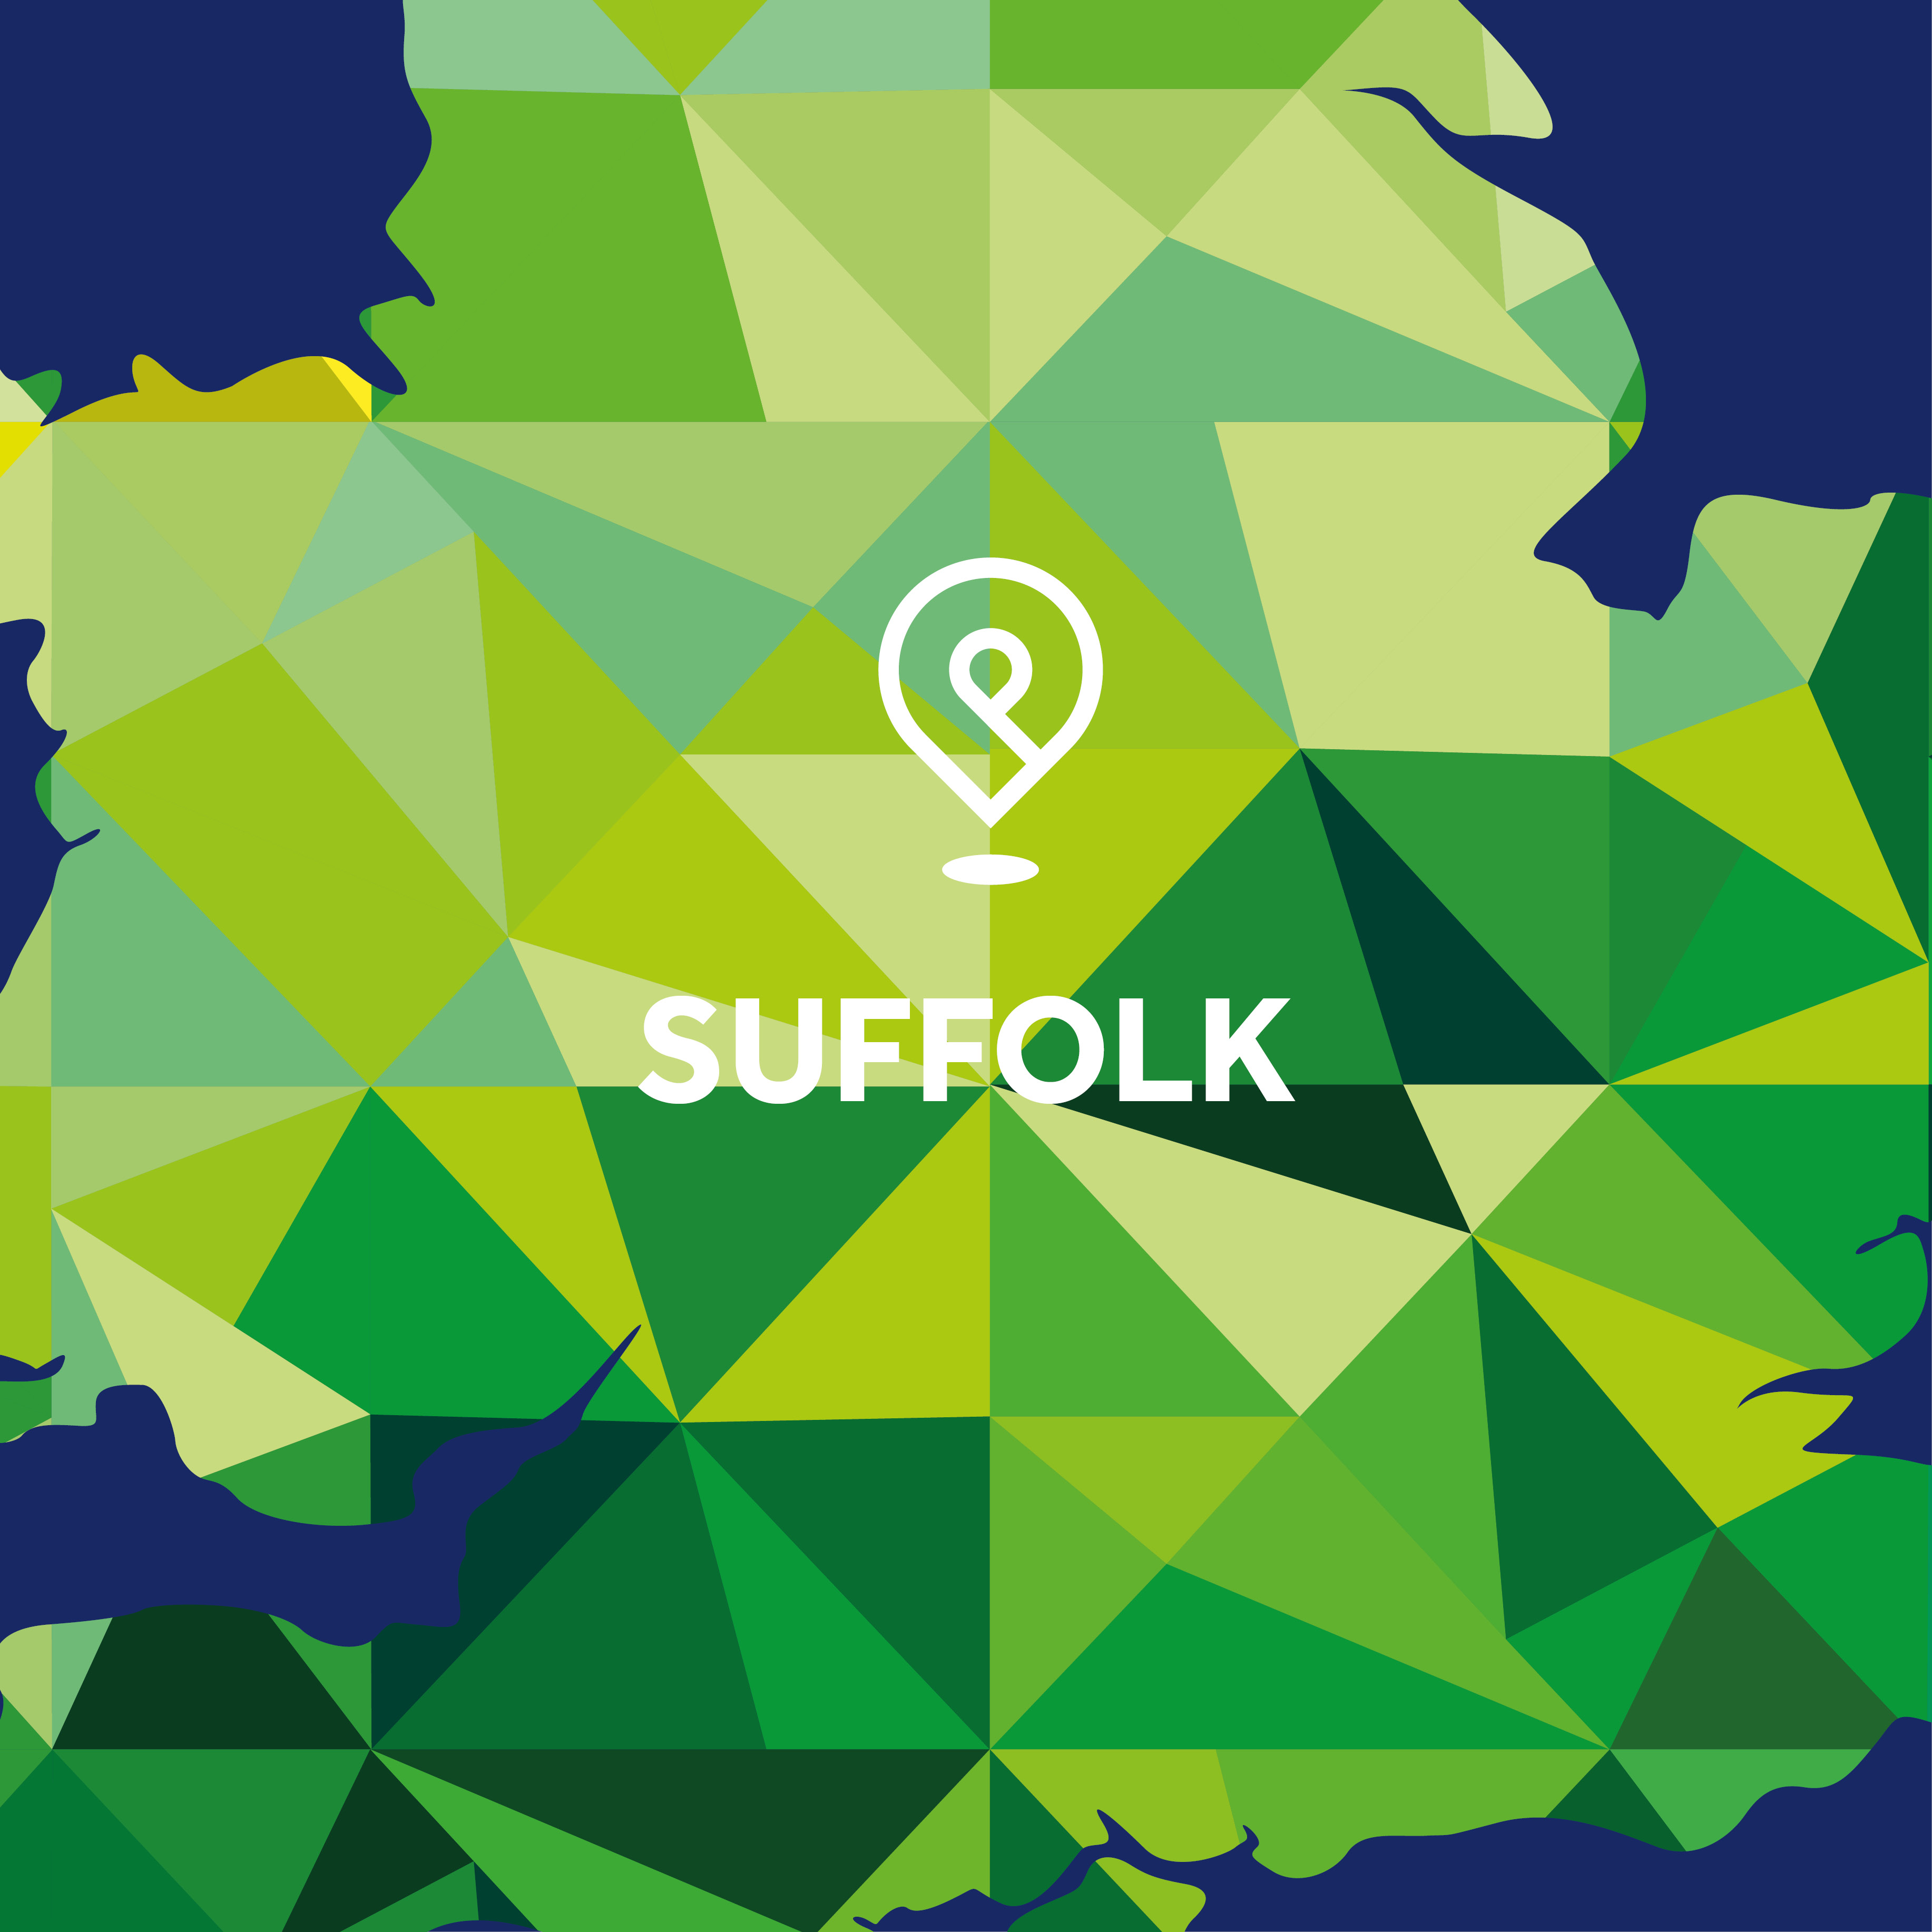 Suffolk Local Plan Watch - Spring 2022